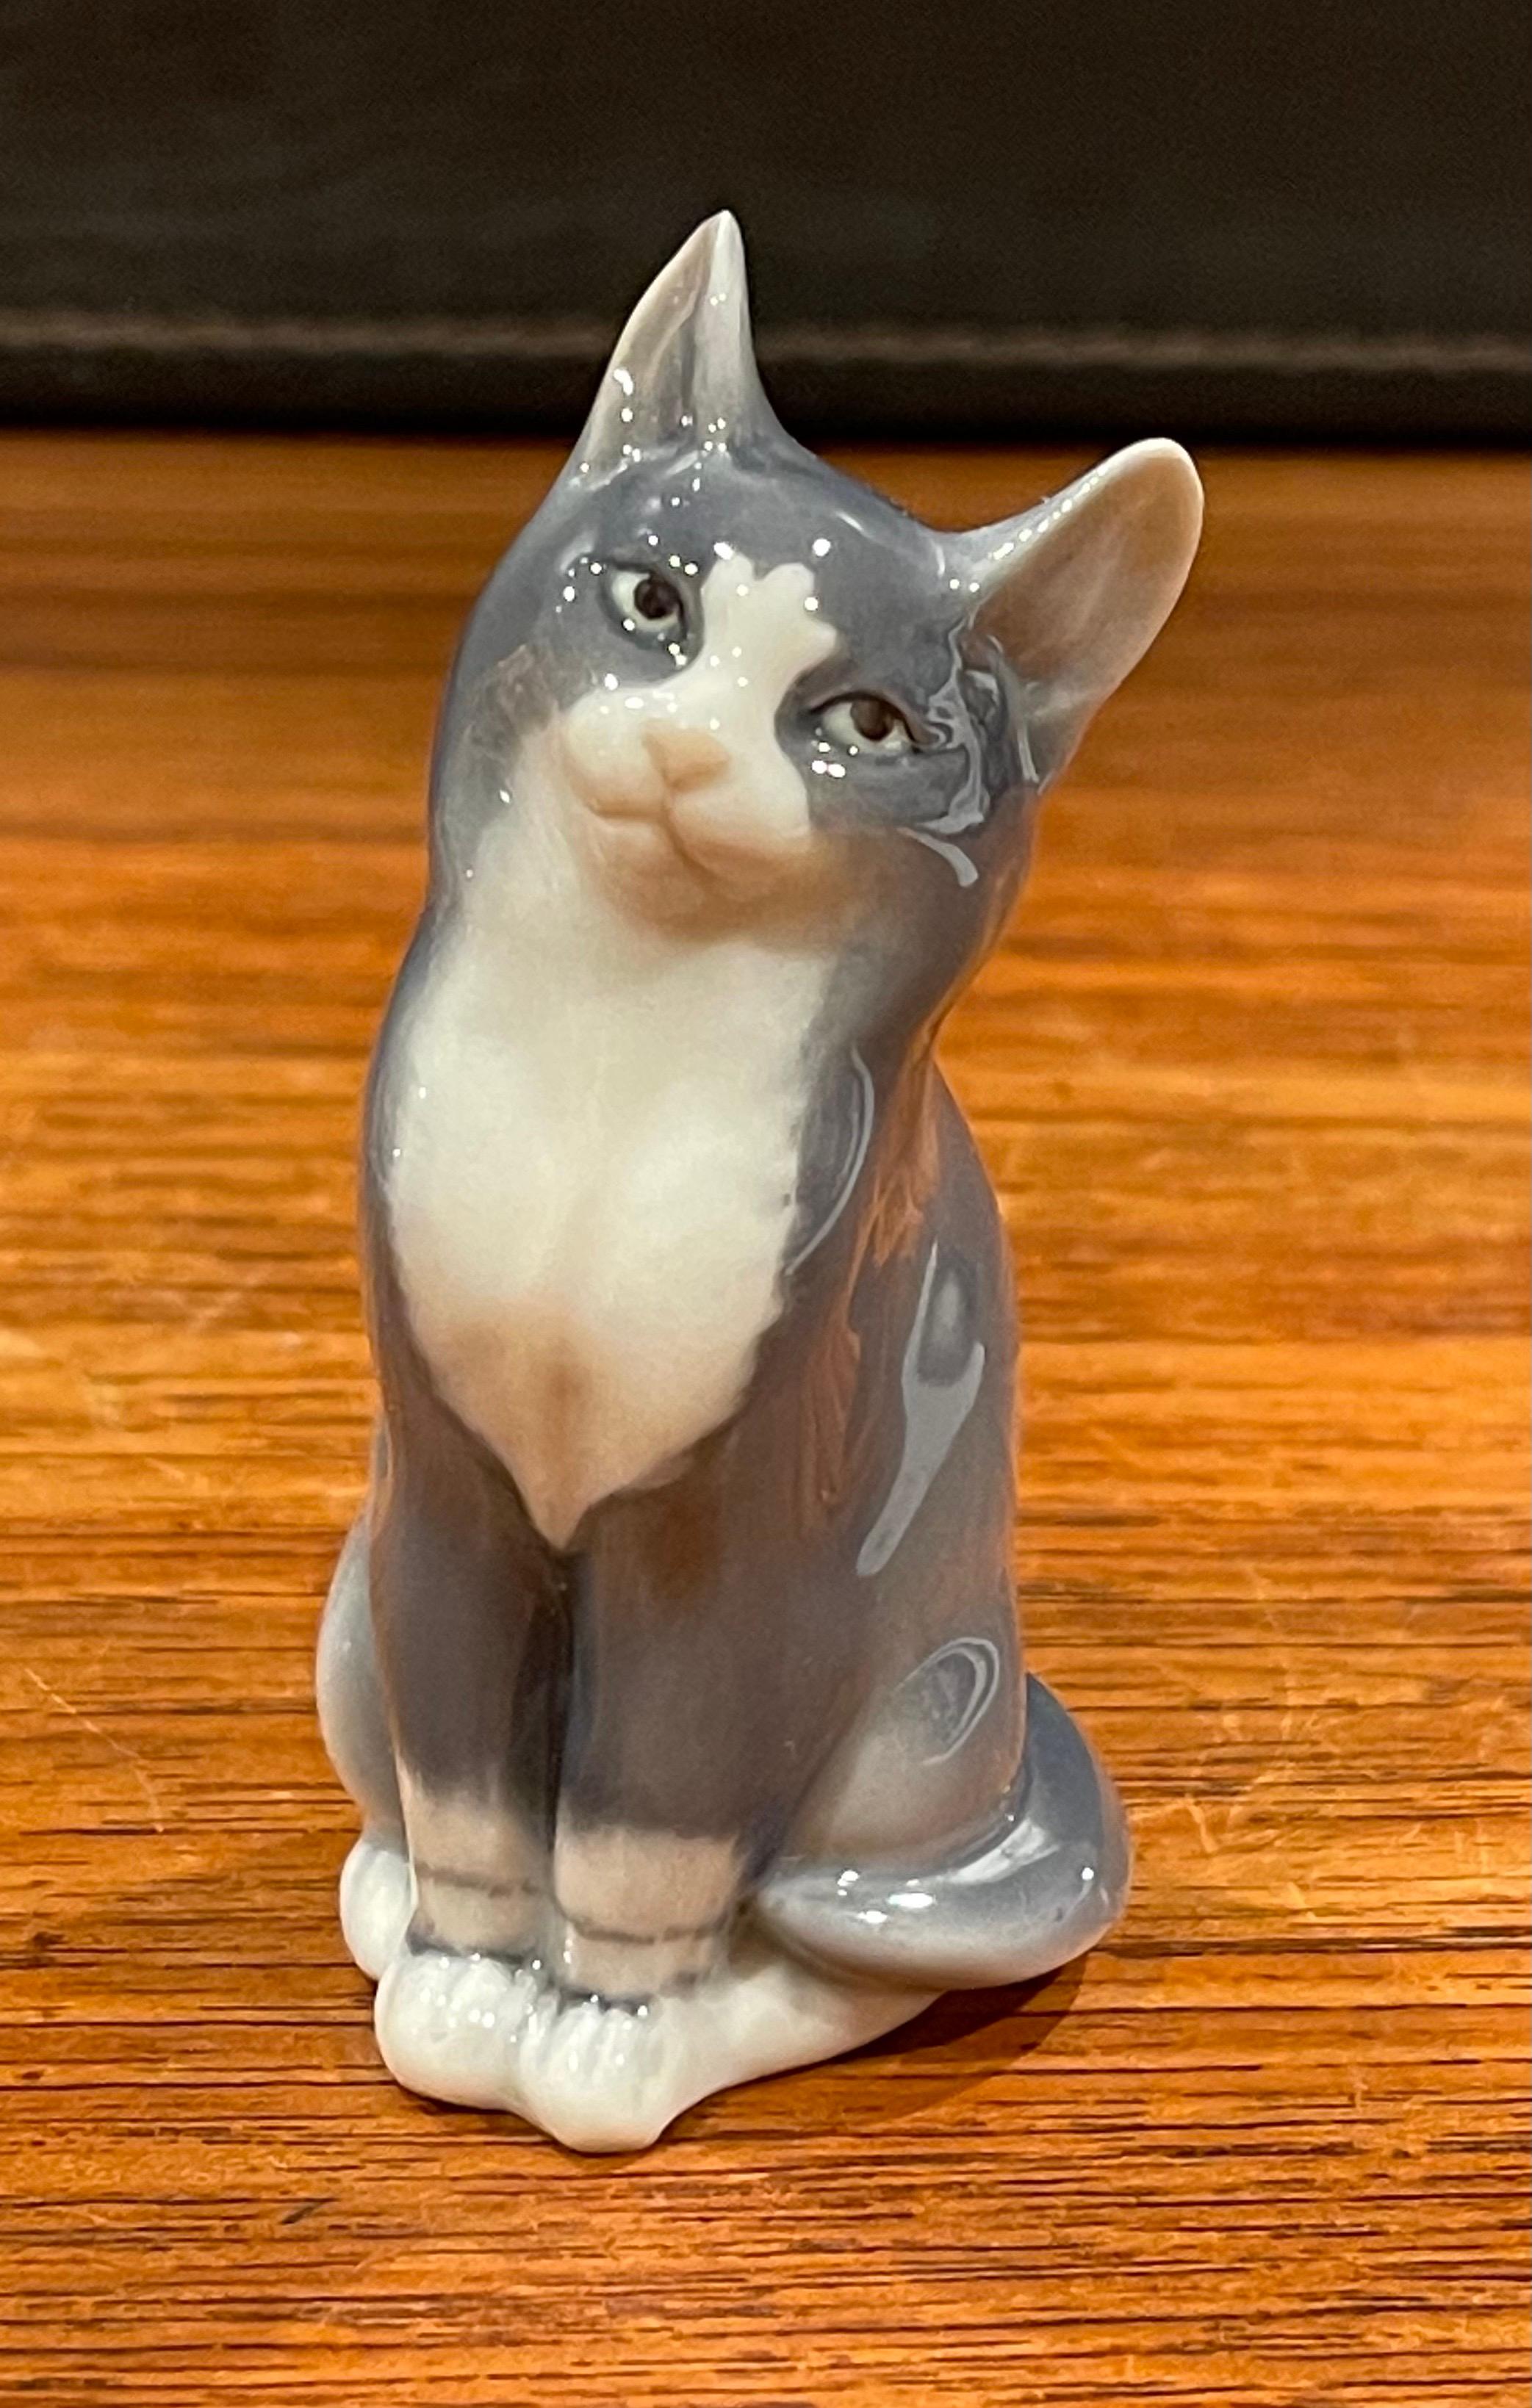 Sammlung von sieben Miniatur-Porzellan-Katzenskulpturen von Royal Copenhagen (Dänisch)